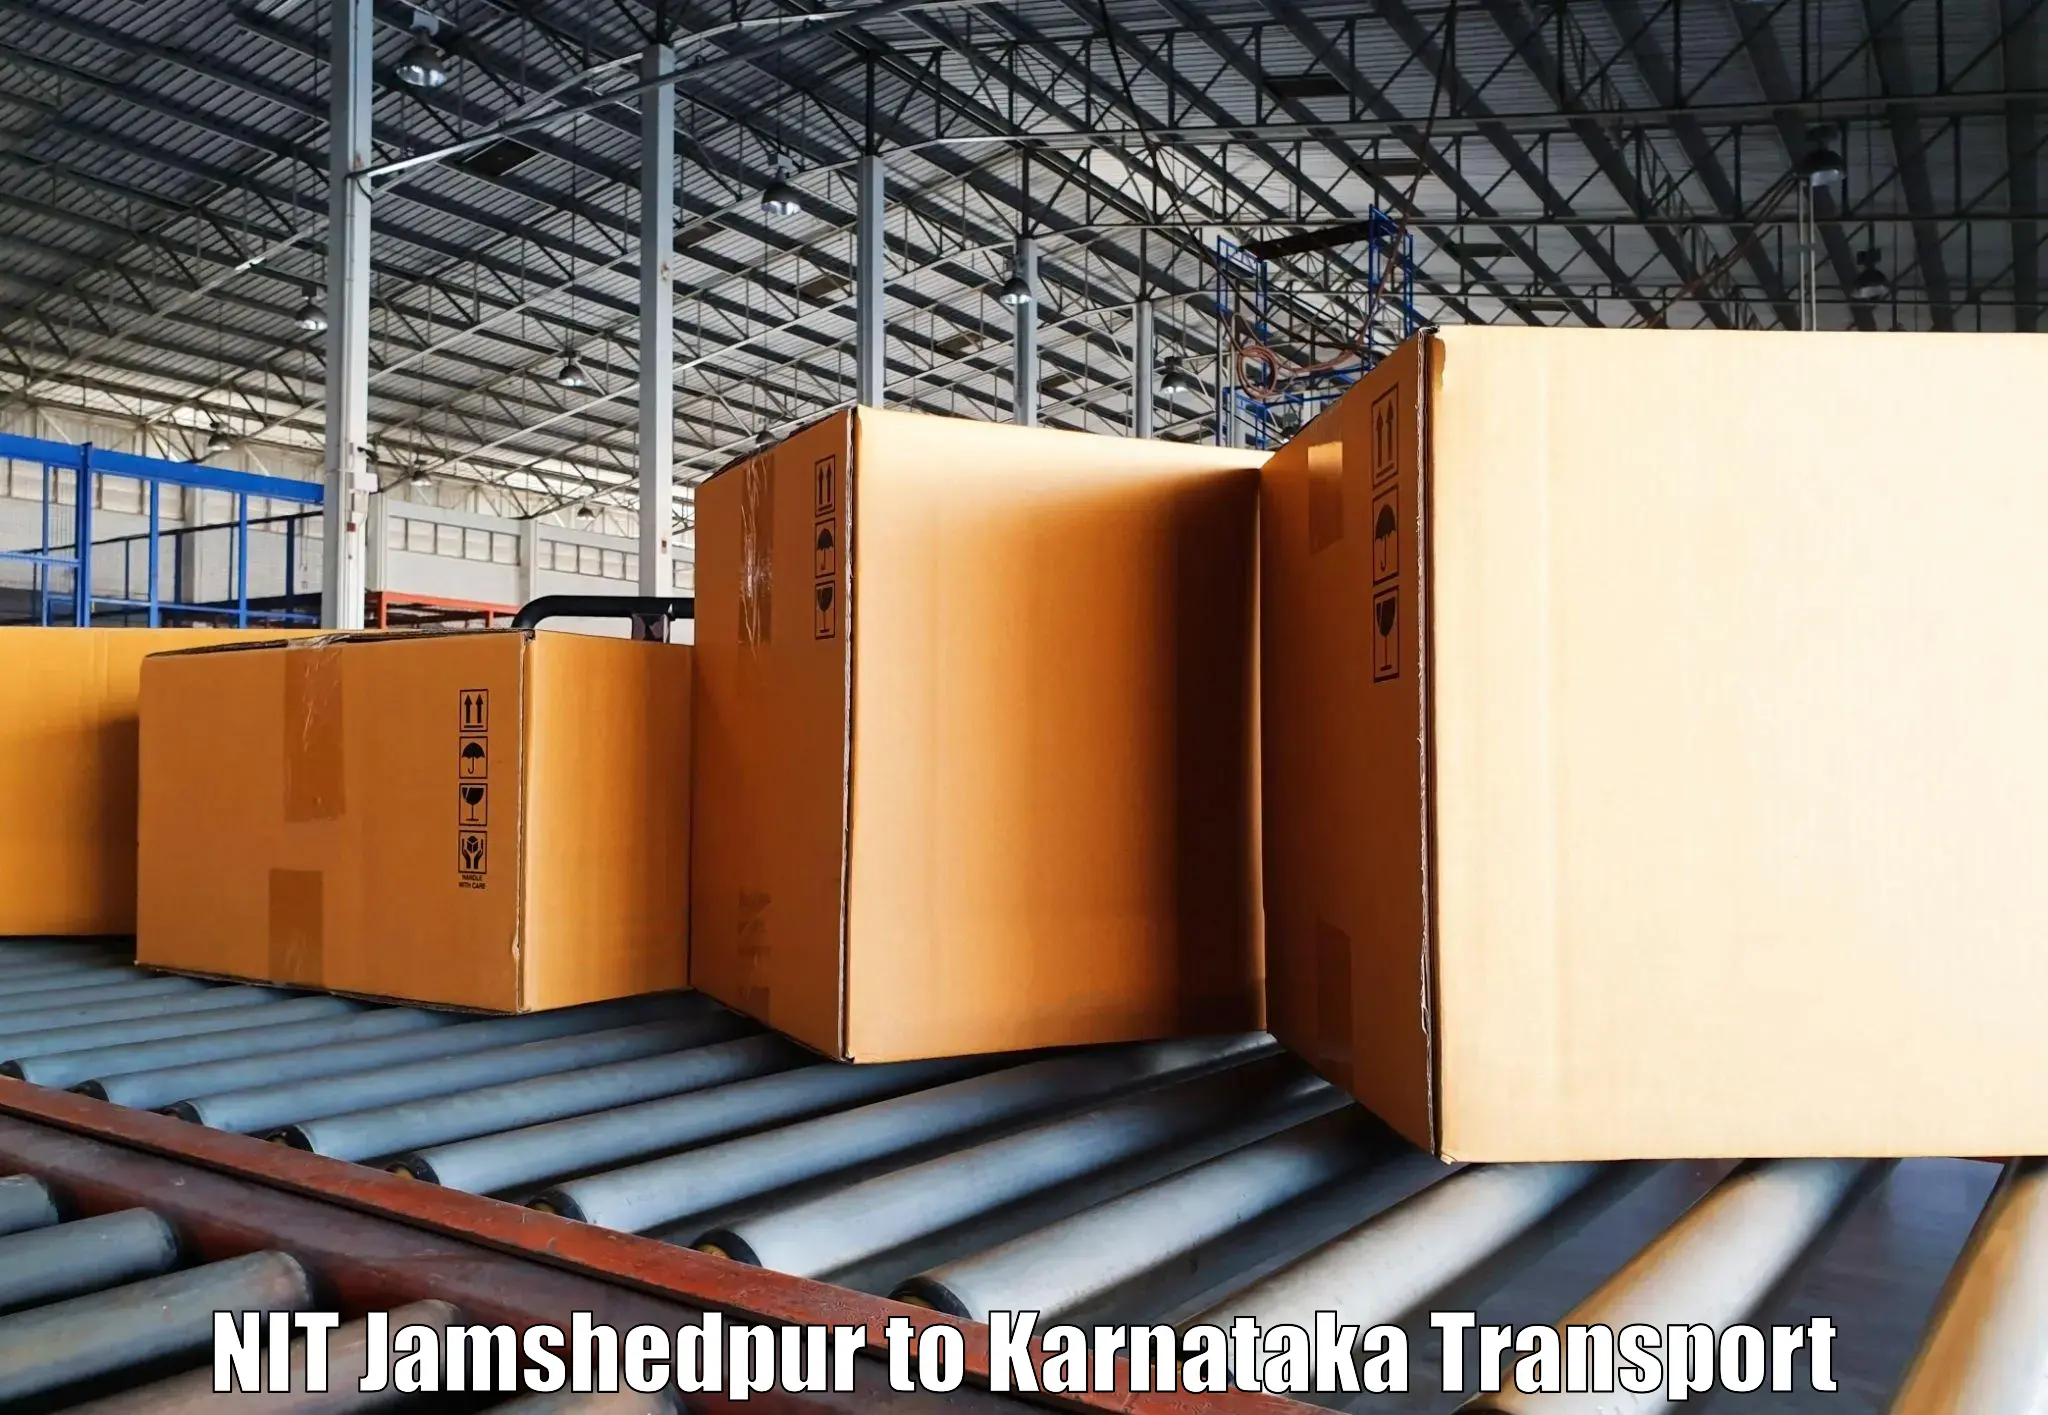 Two wheeler parcel service NIT Jamshedpur to Salahalli